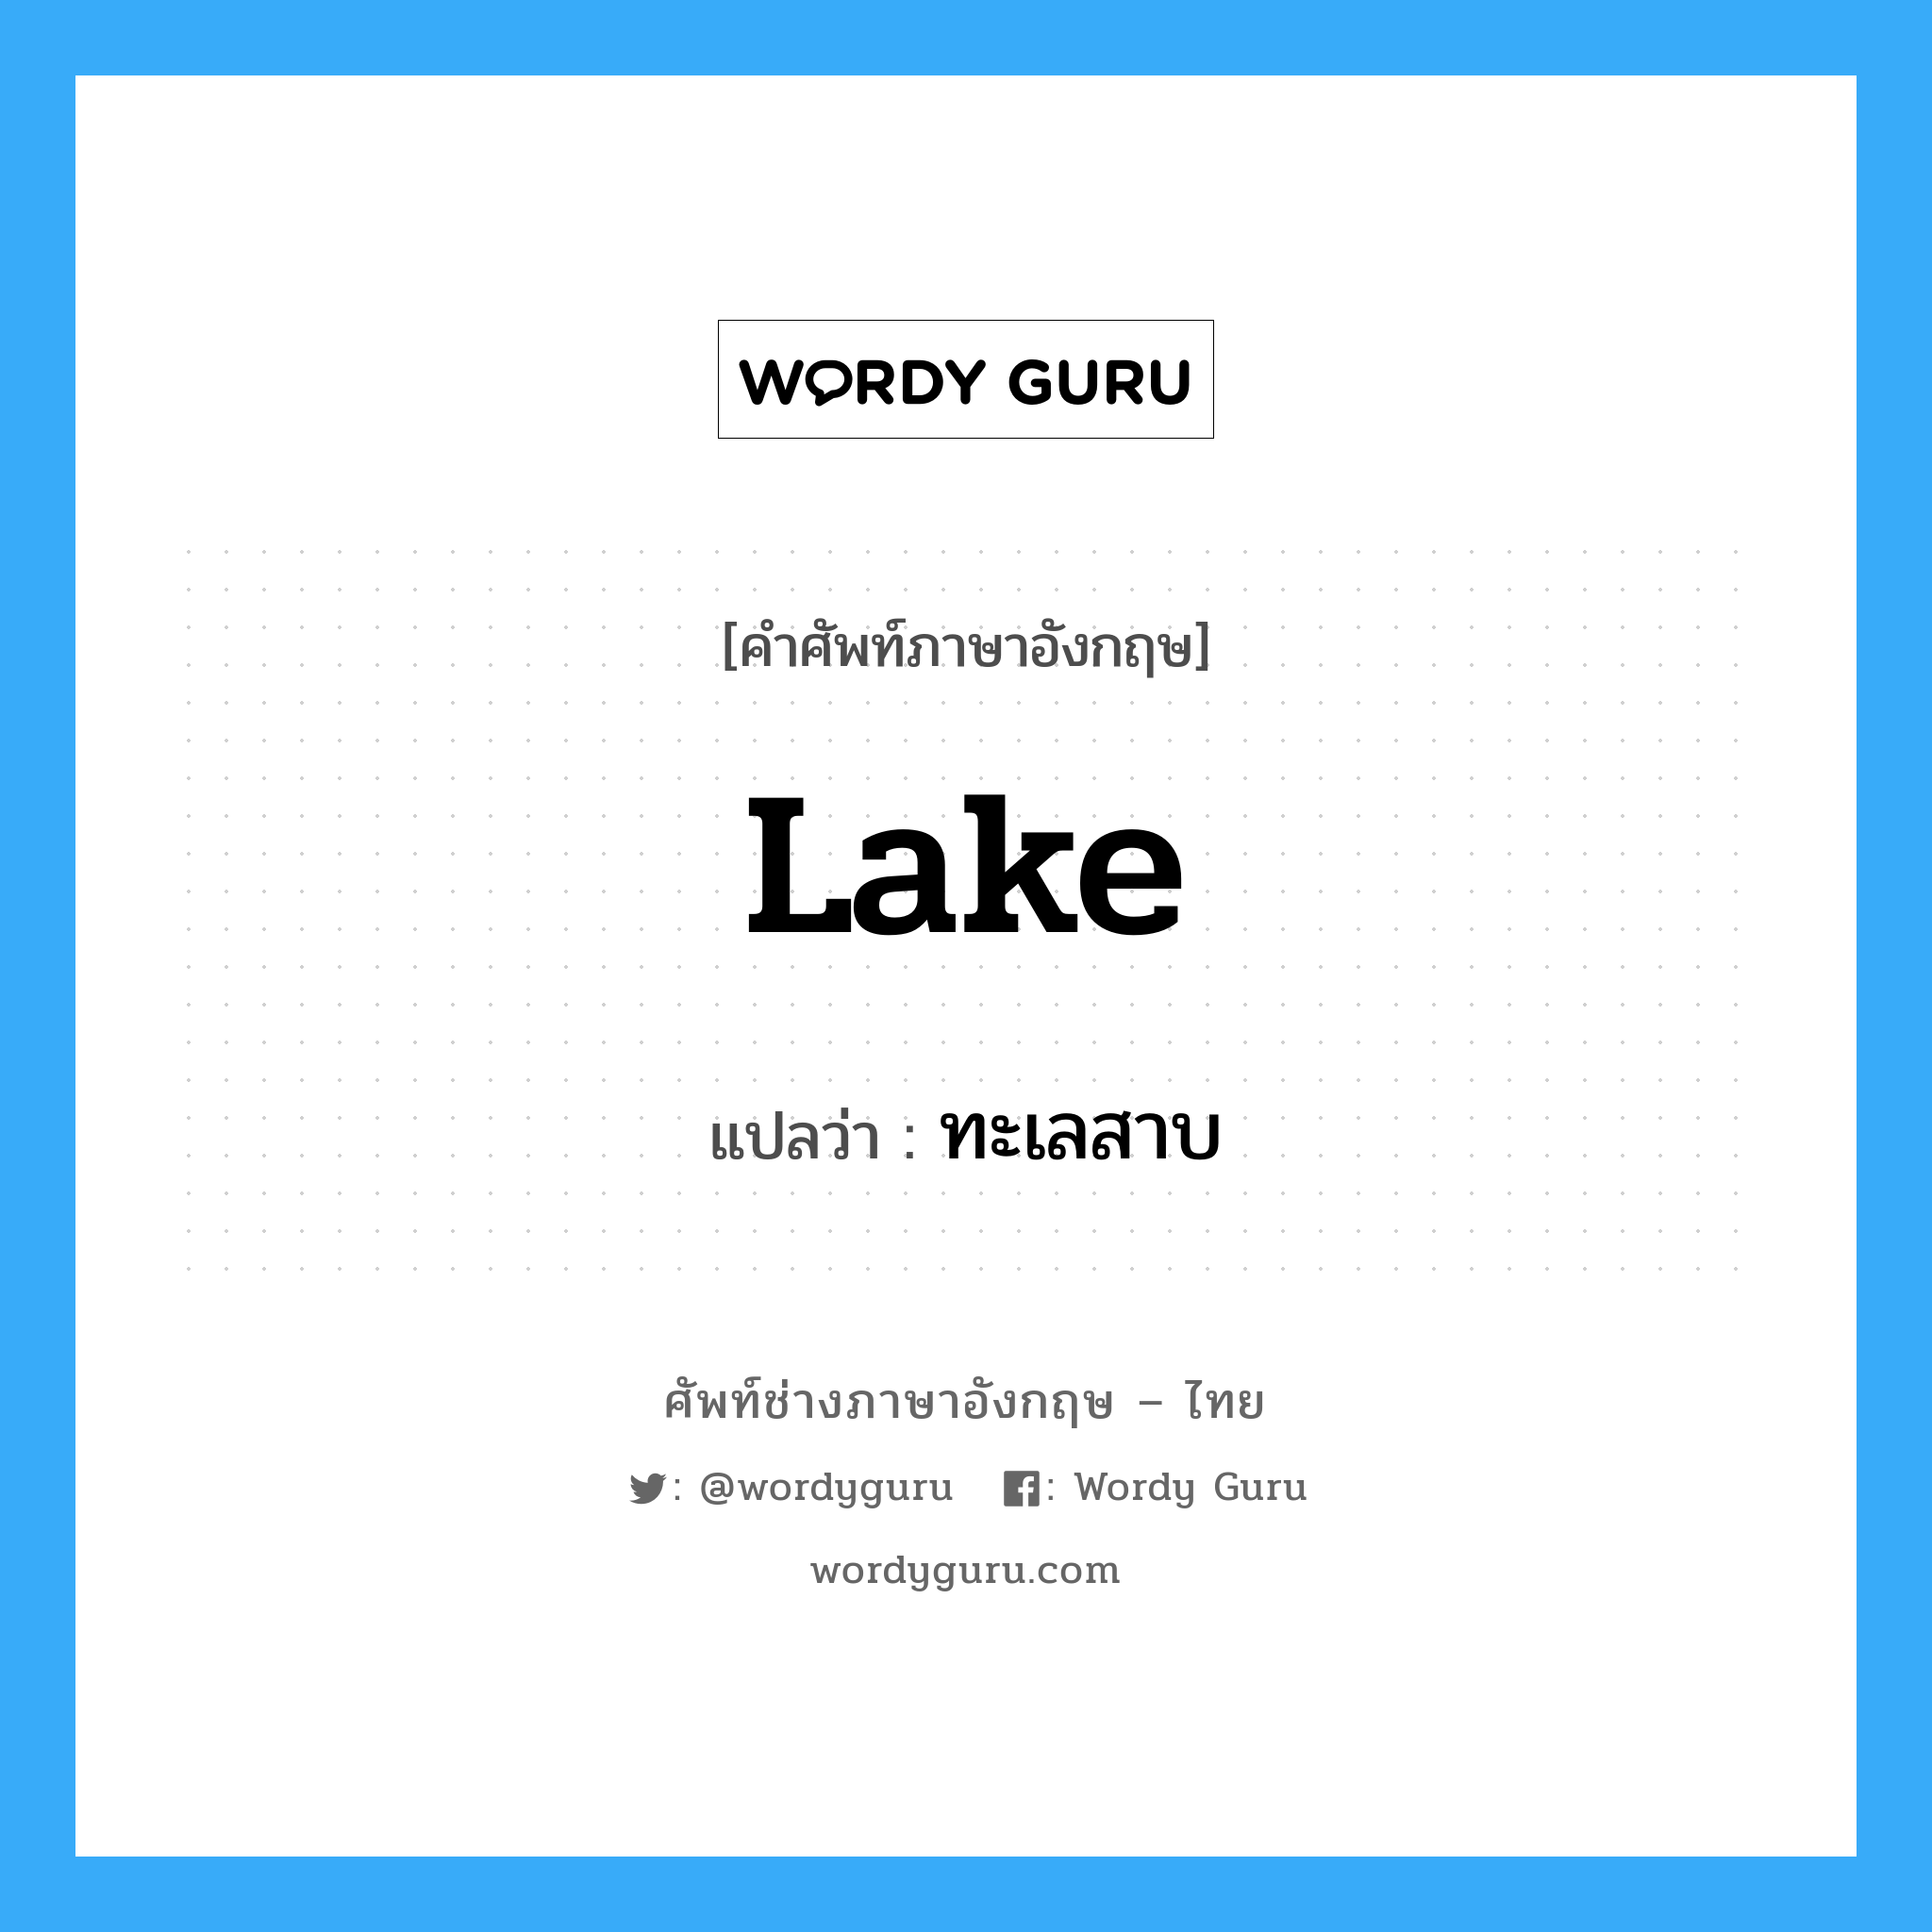 ทะเลสาบ ภาษาอังกฤษ?, คำศัพท์ช่างภาษาอังกฤษ - ไทย ทะเลสาบ คำศัพท์ภาษาอังกฤษ ทะเลสาบ แปลว่า lake